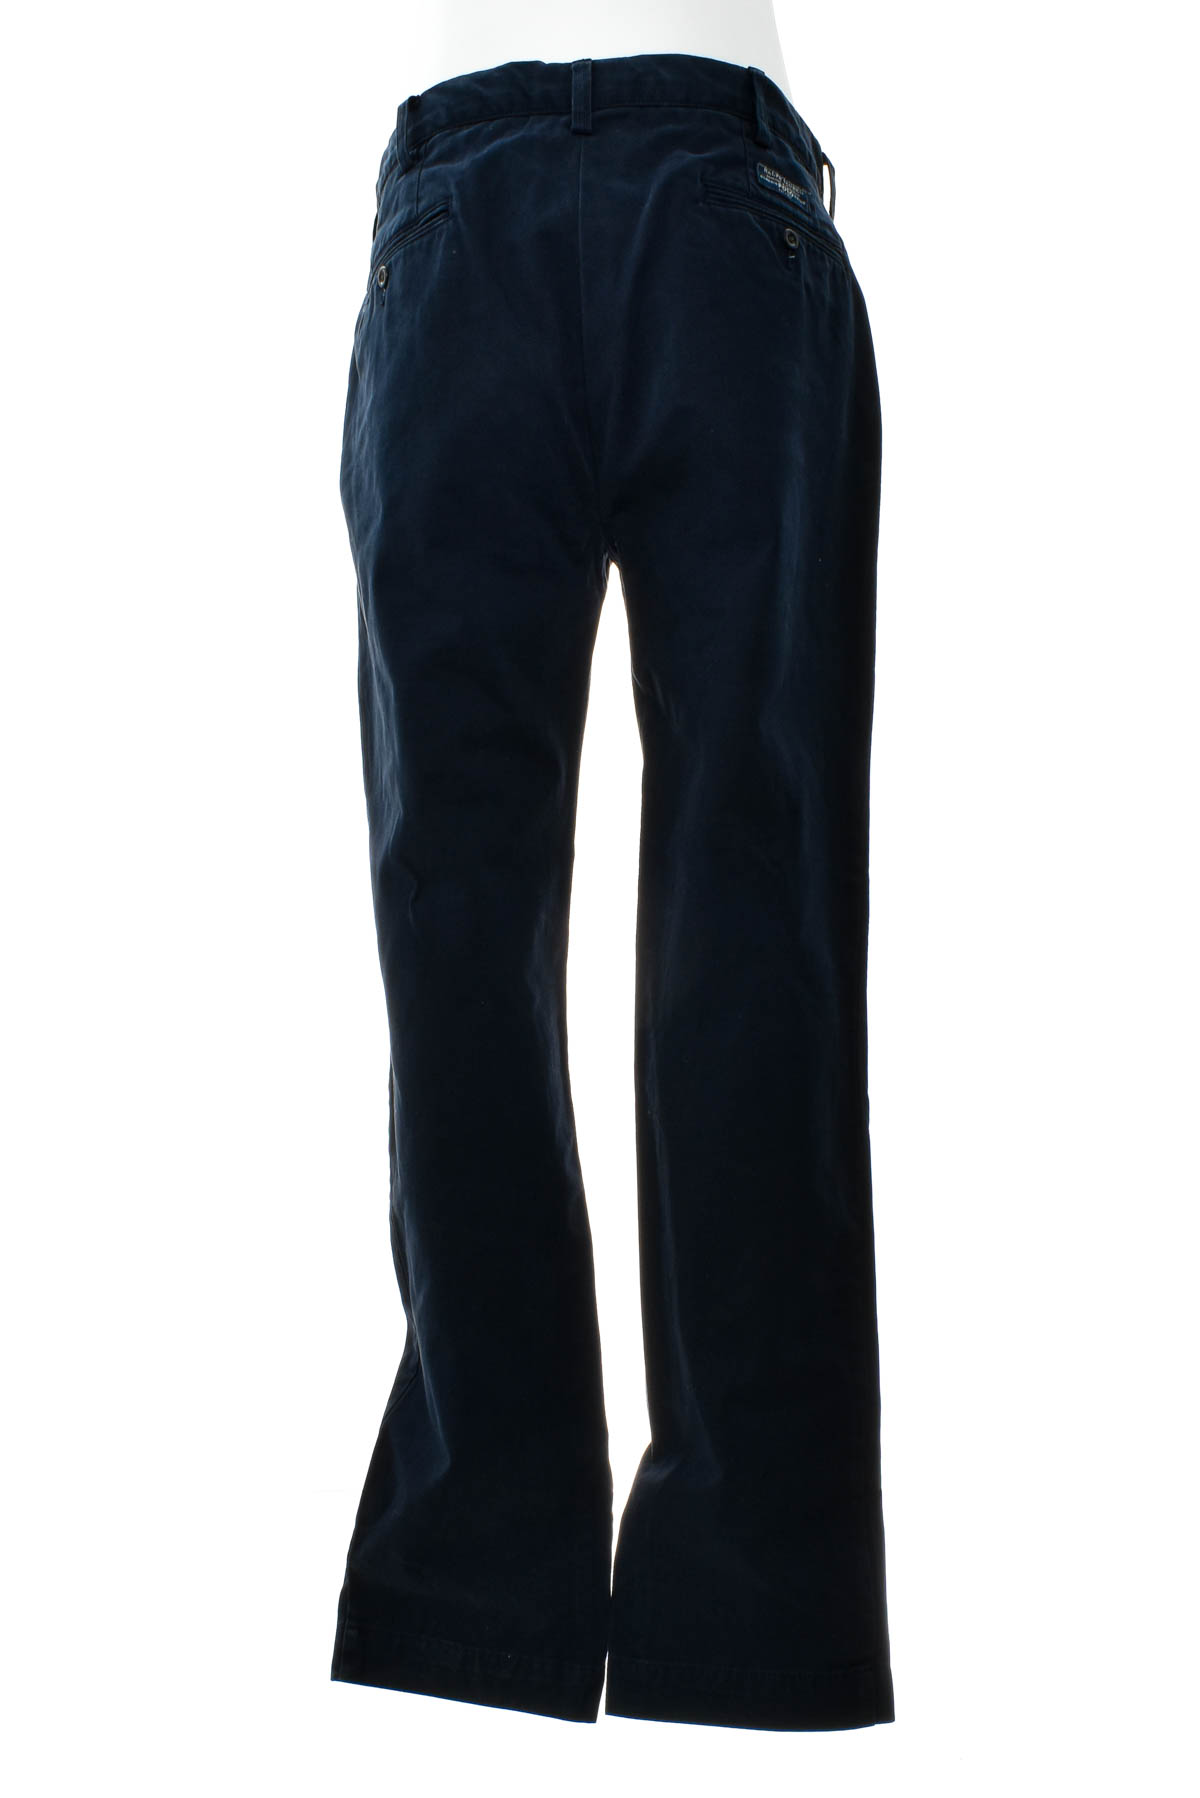 Ανδρικά παντελόνια - Polo by Ralph Lauren - 1